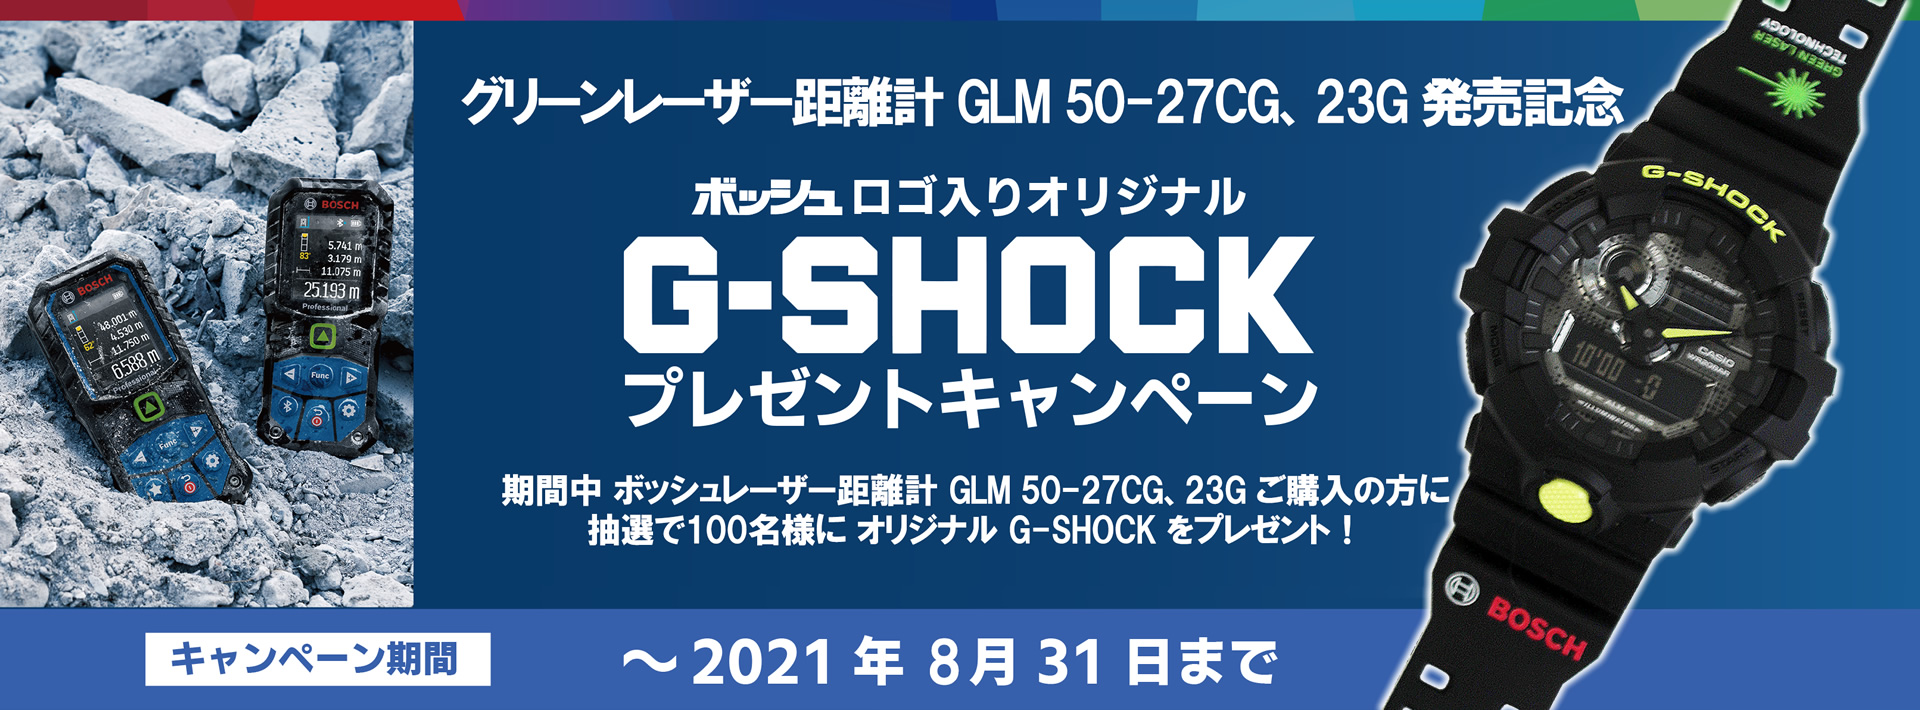 ボッシュ 新型グリーンレーザー距離計 ご購入者様限定 G-SHOCK プレゼントキャンペーン